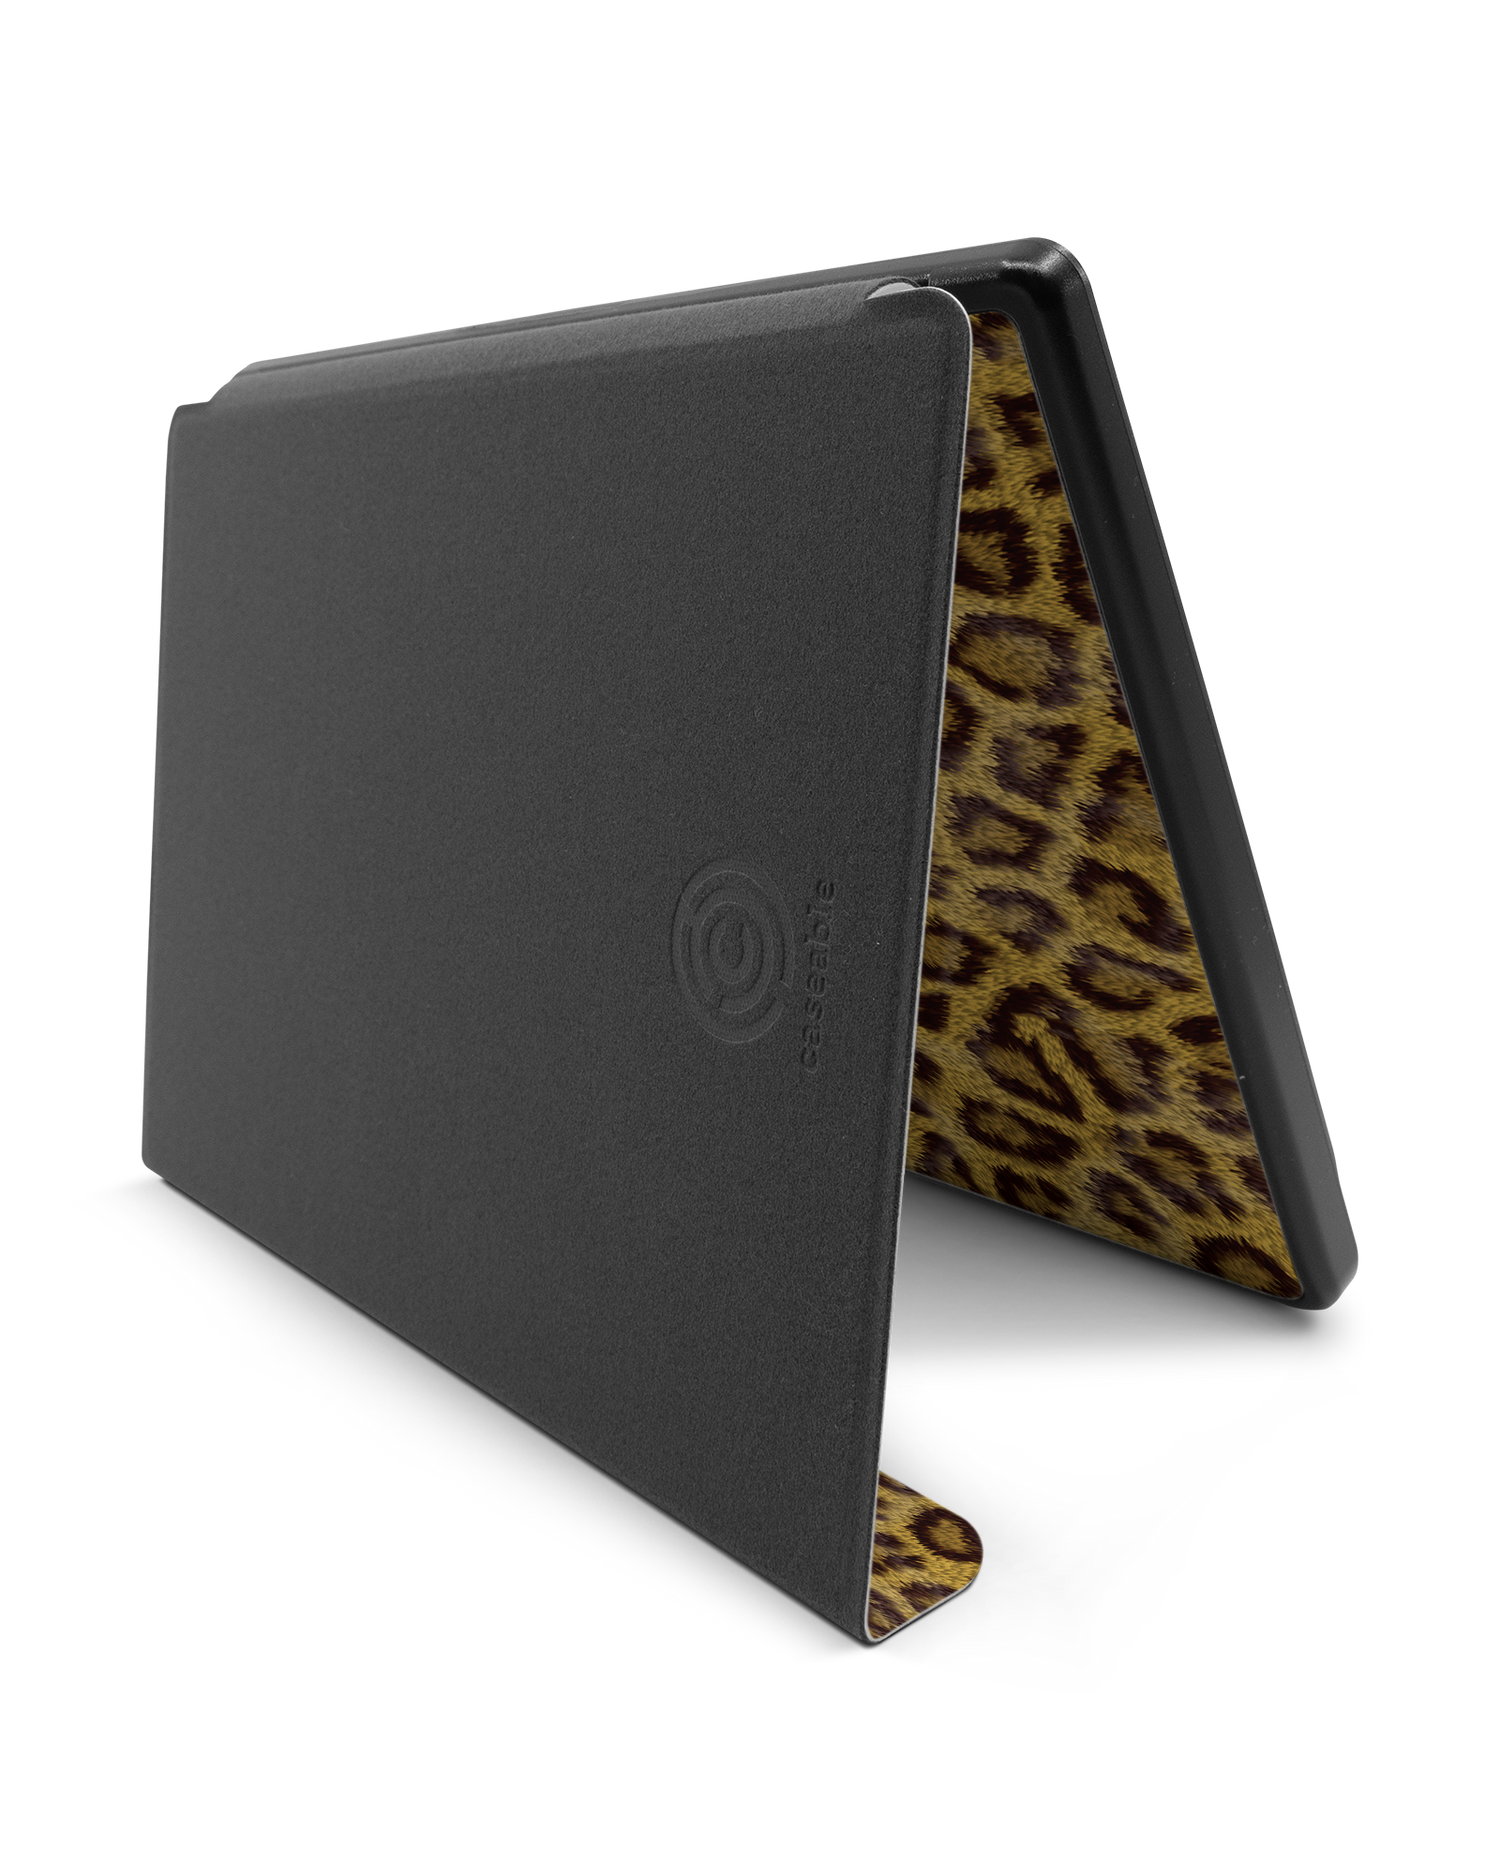 Leopard Skin eBook Reader Smart Case für tolino epos 2: Aufgestellt im Querformat